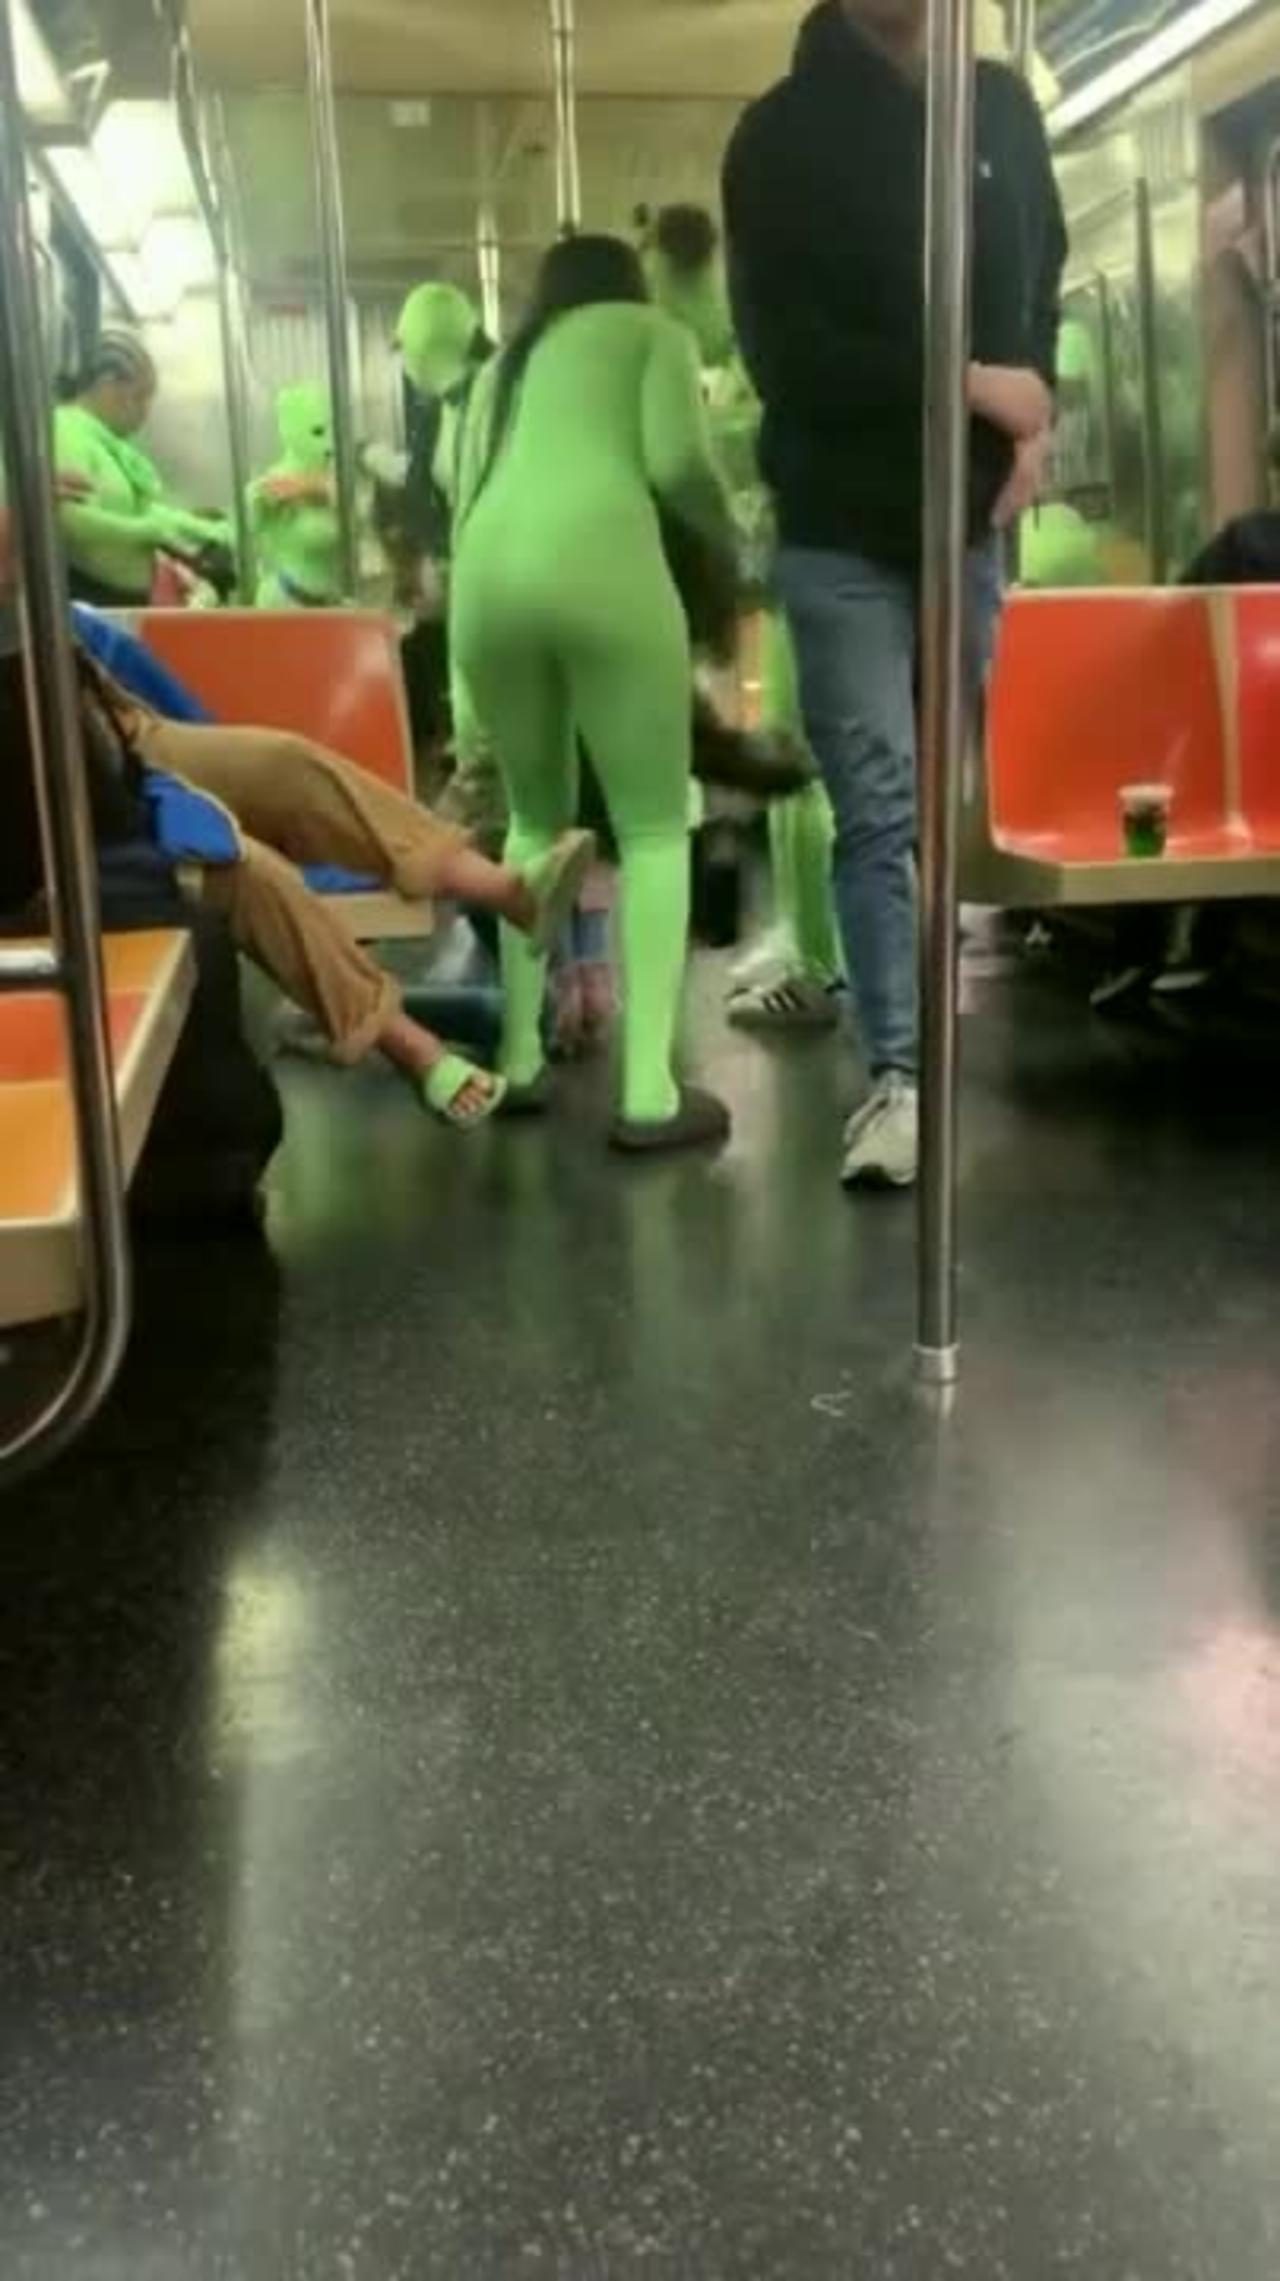 Horde Of Women In Neon Green Bodysuits Assault NYC Subway Passengers